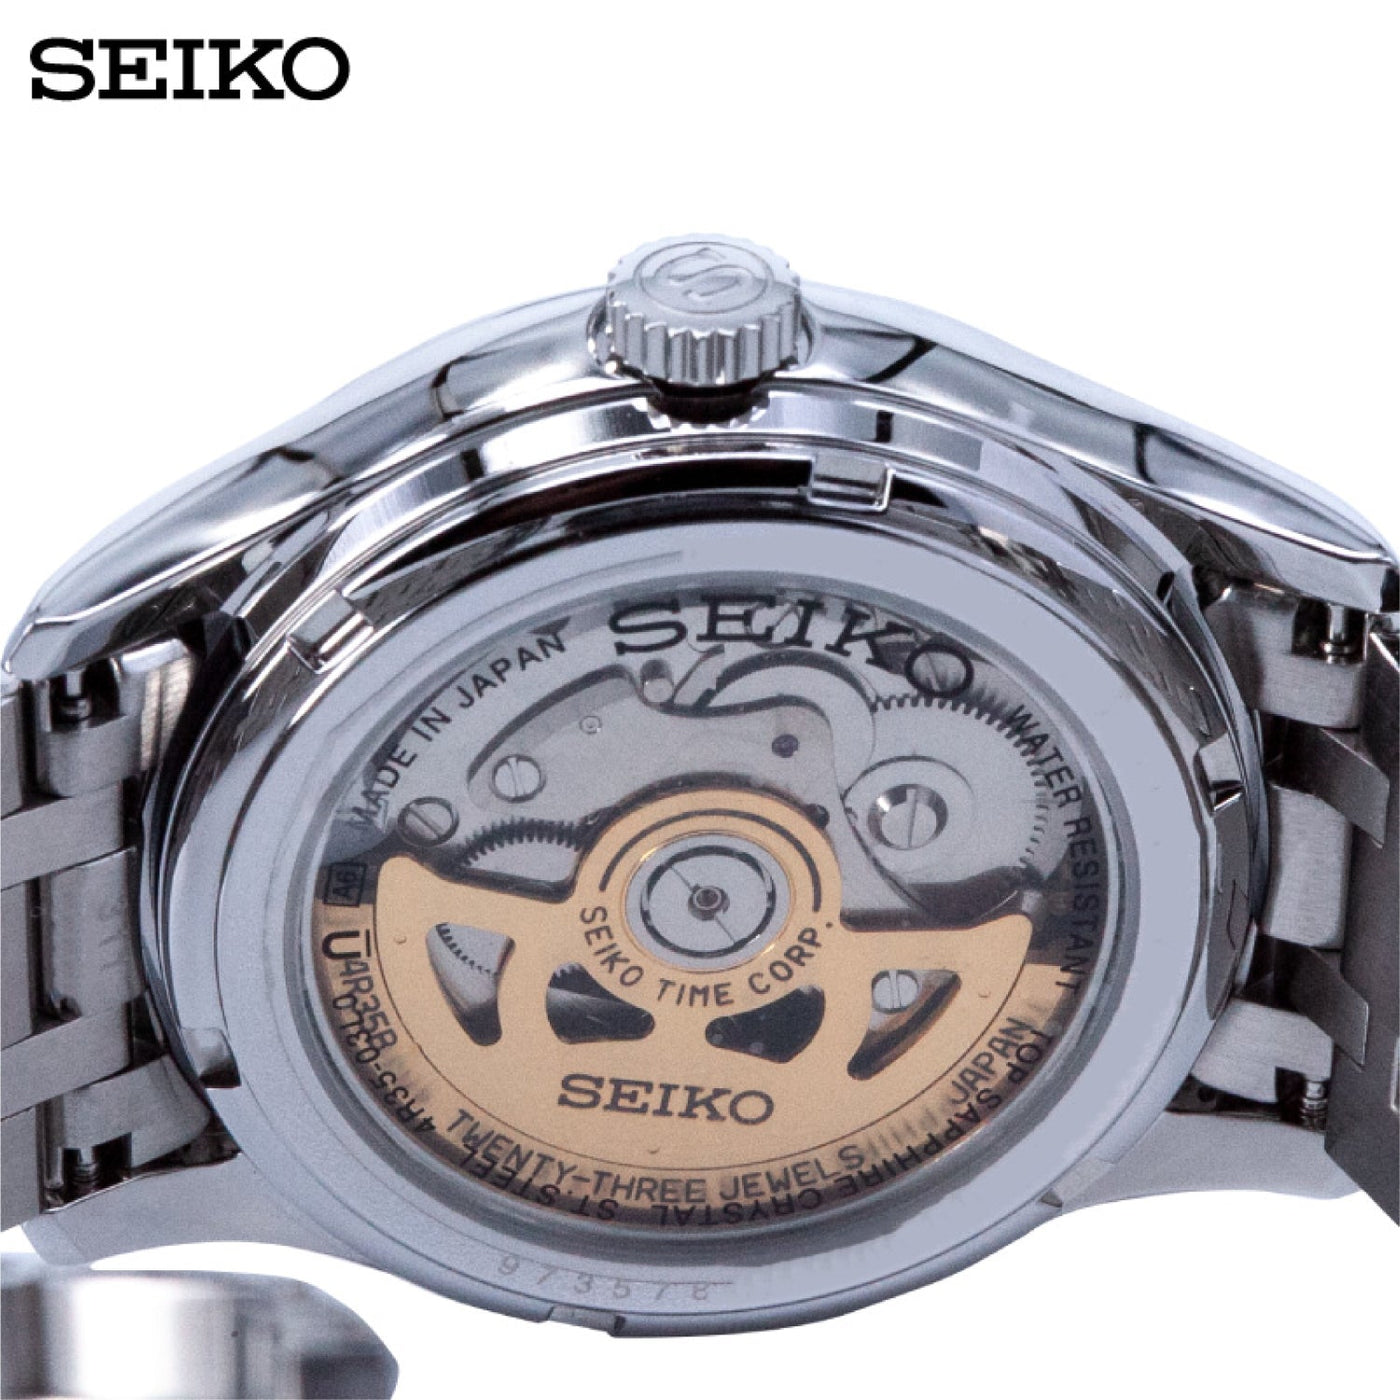 Seiko (ไซโก) นาฬิกาข้อมือ รุ่น Presage Automatic SRPC81J ระบบอัตโนมัติ ขนาดตัวเรือน 41.7 มม.